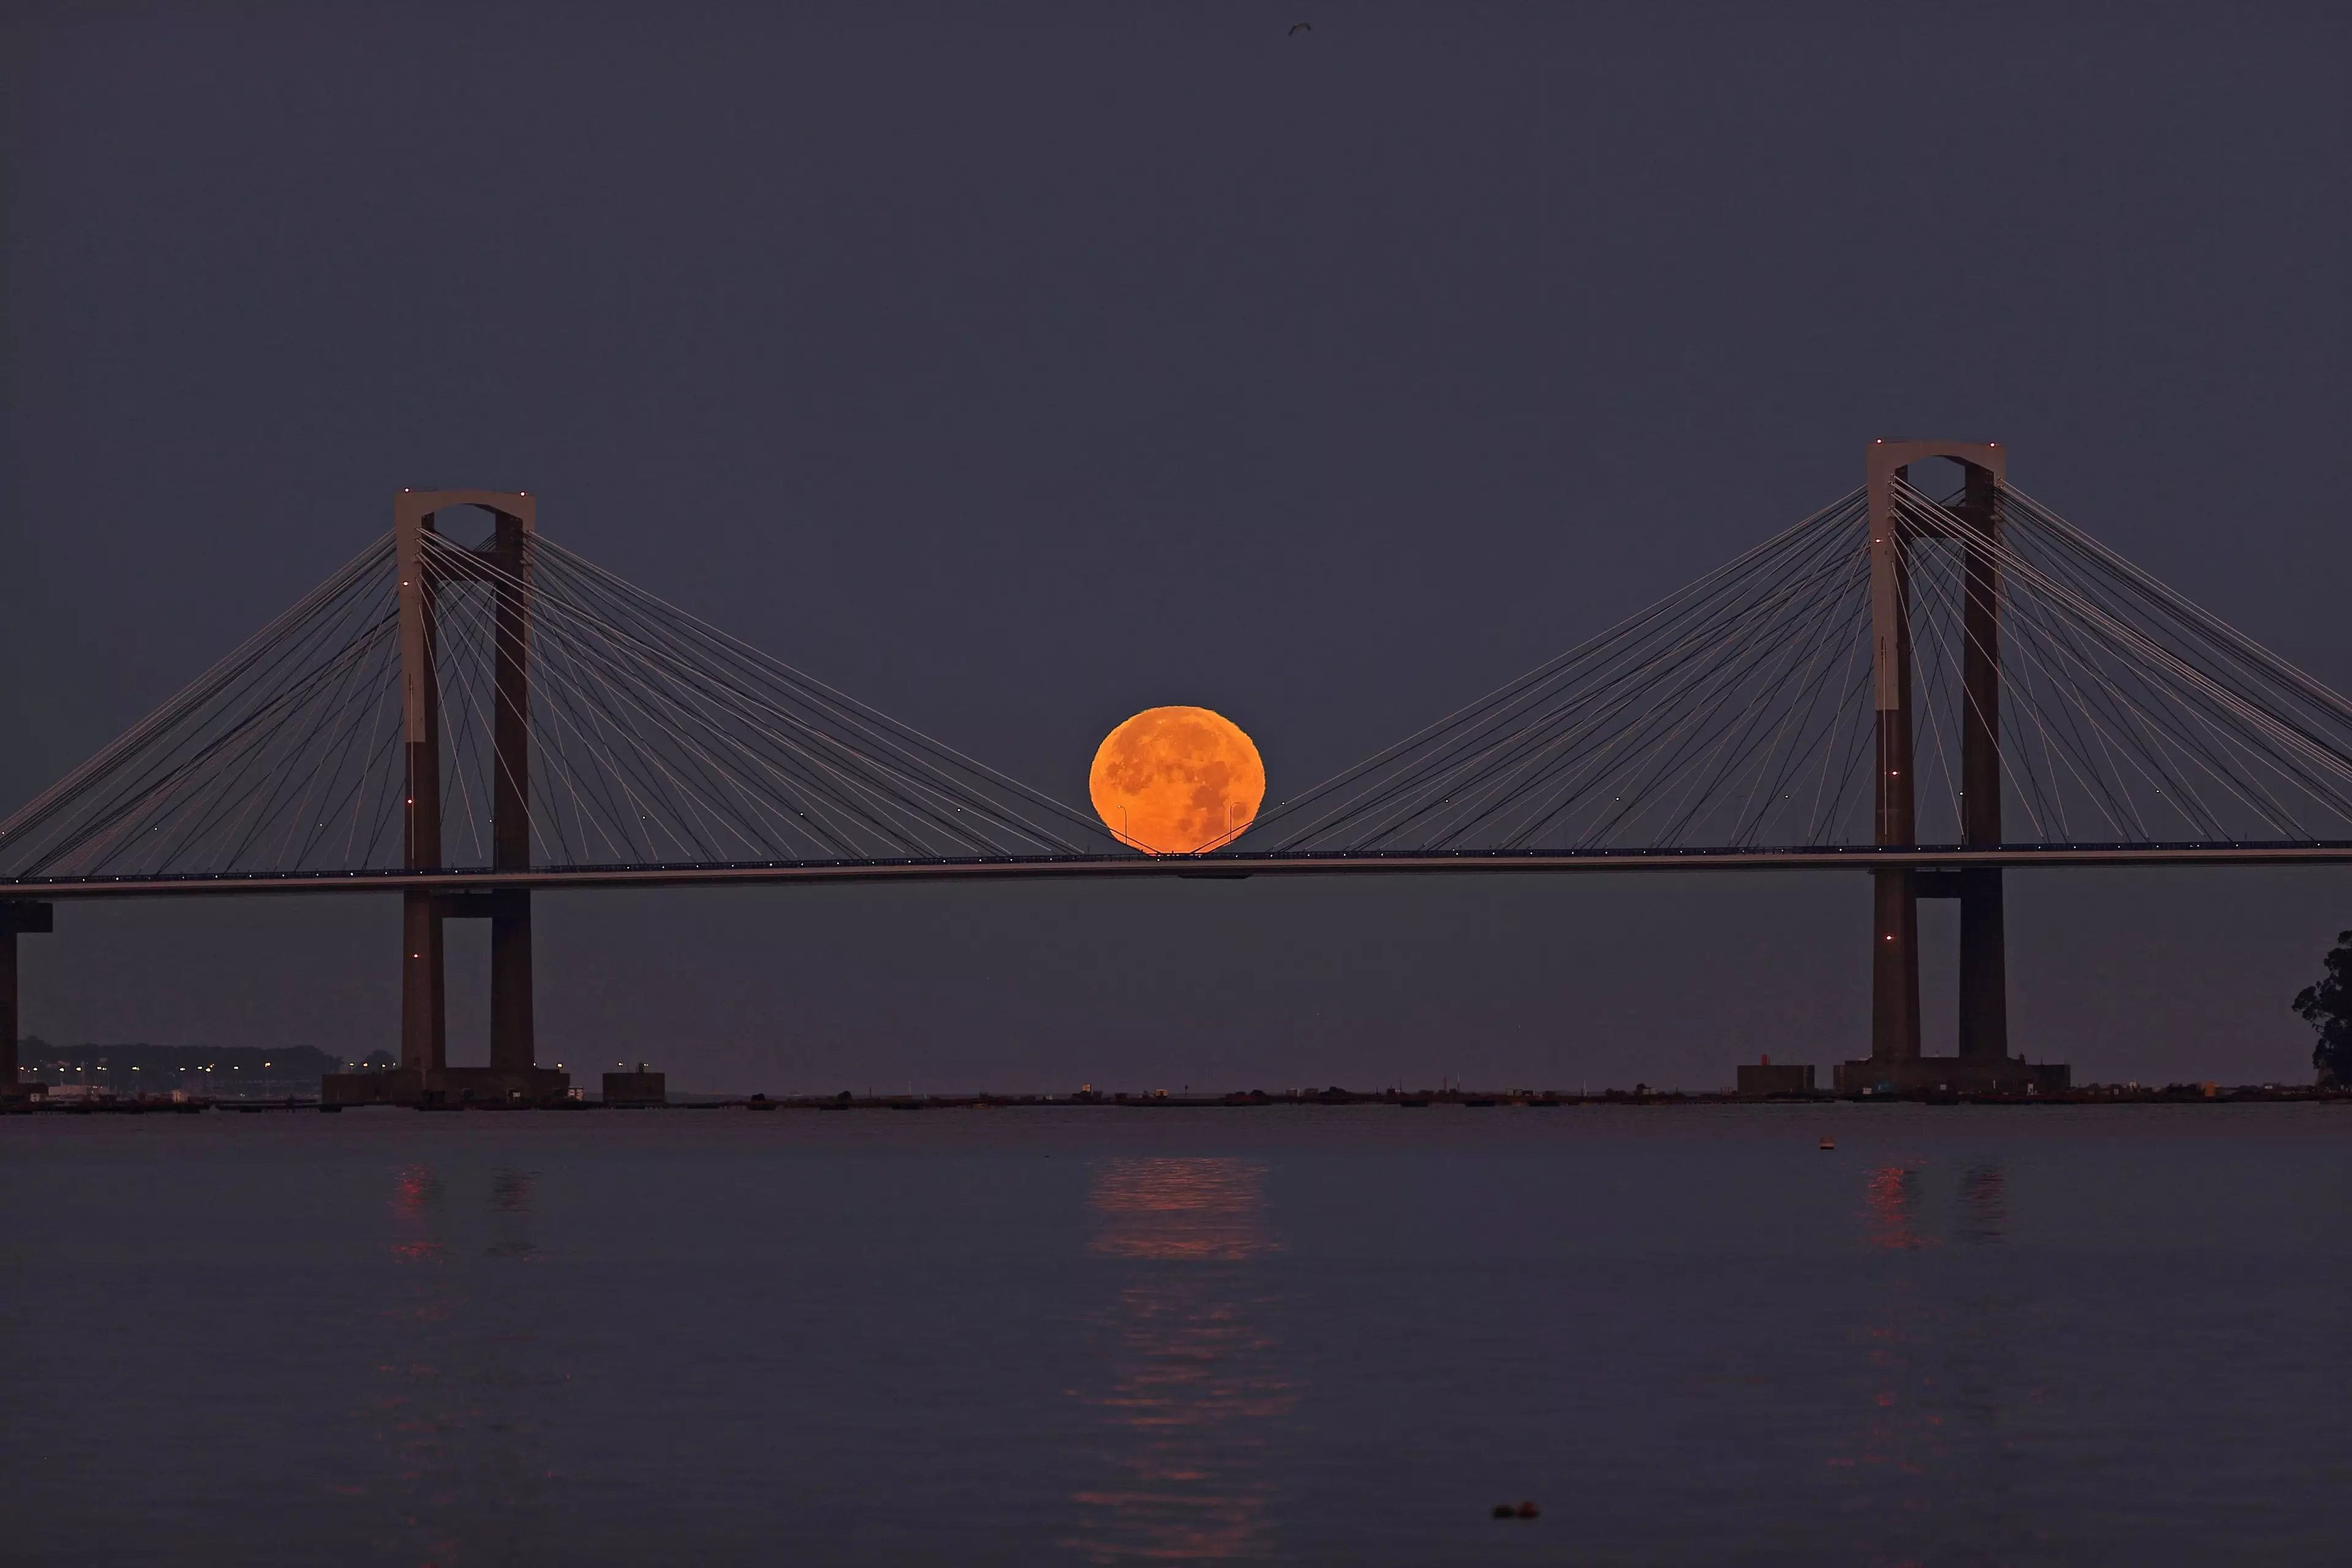 This weekend's full moon over the Rande Bridge, northwest Spain.